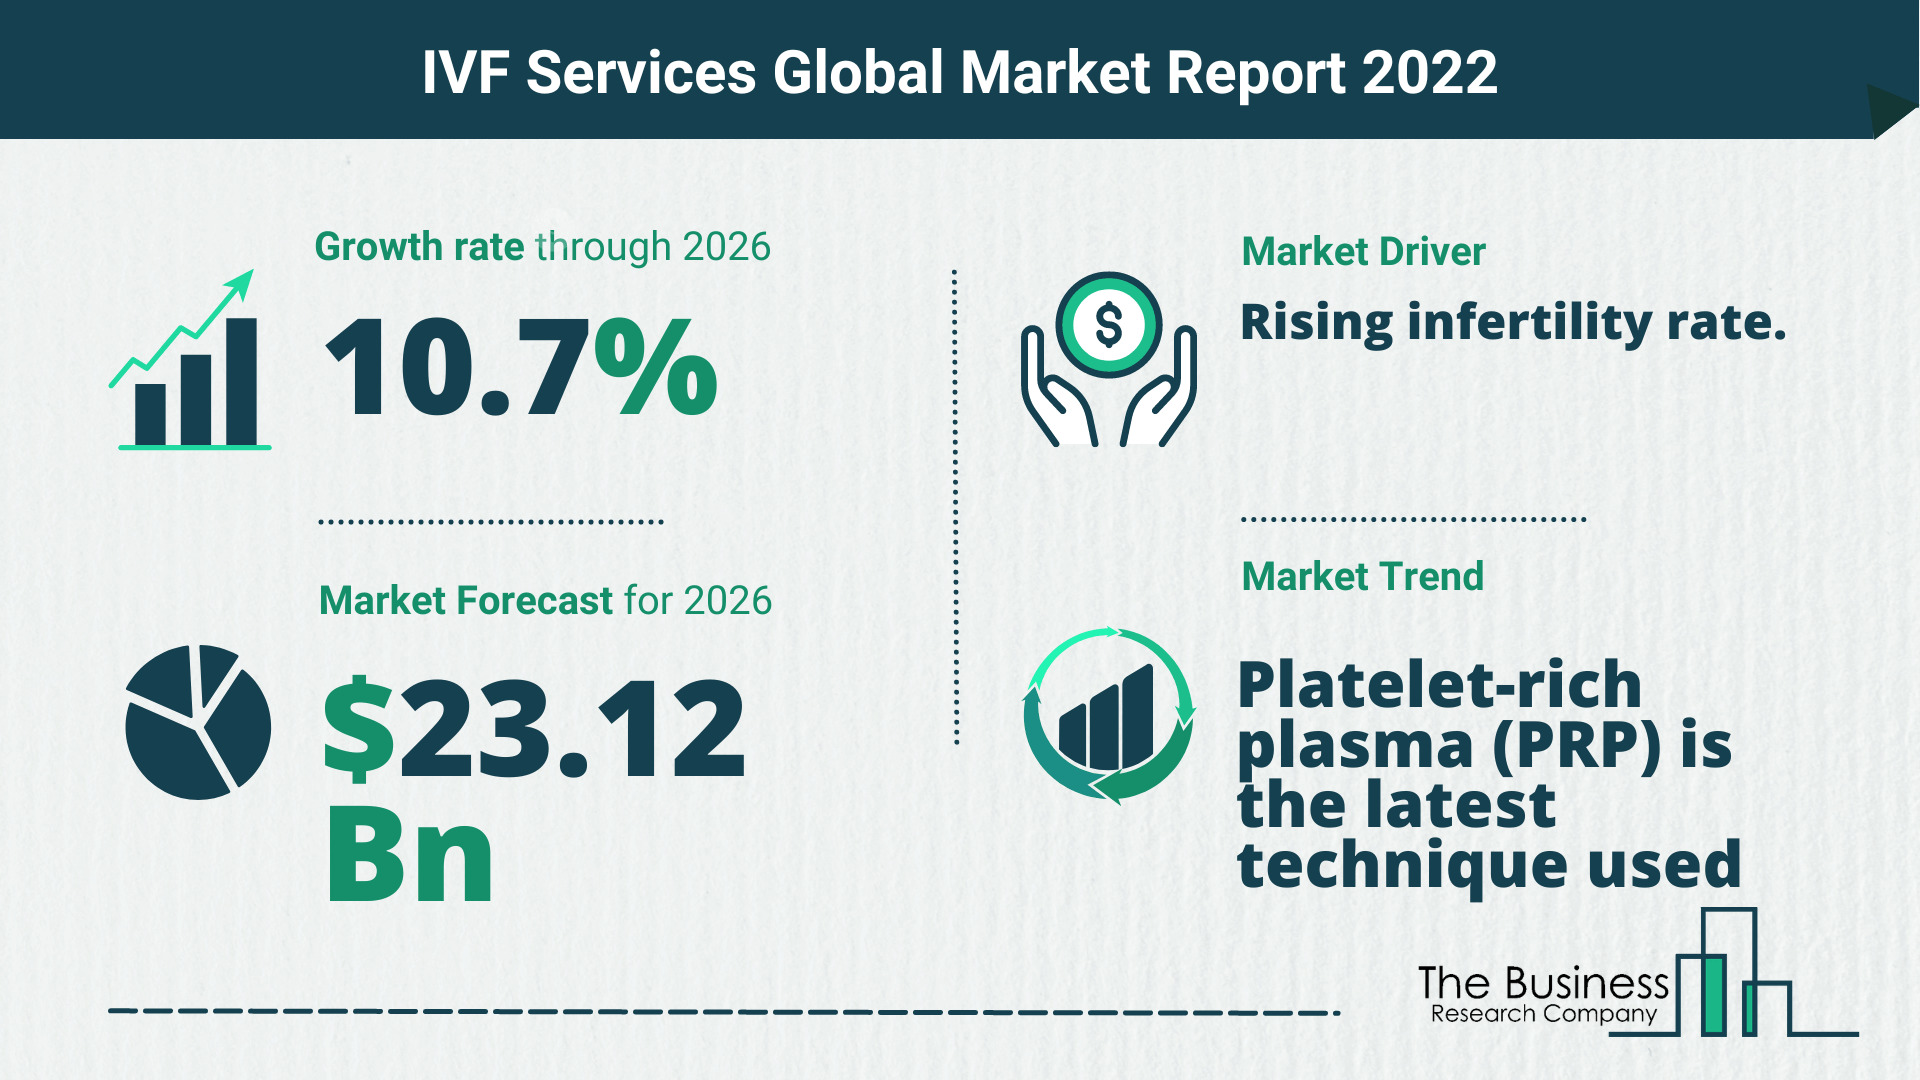 Global IVF Services Market